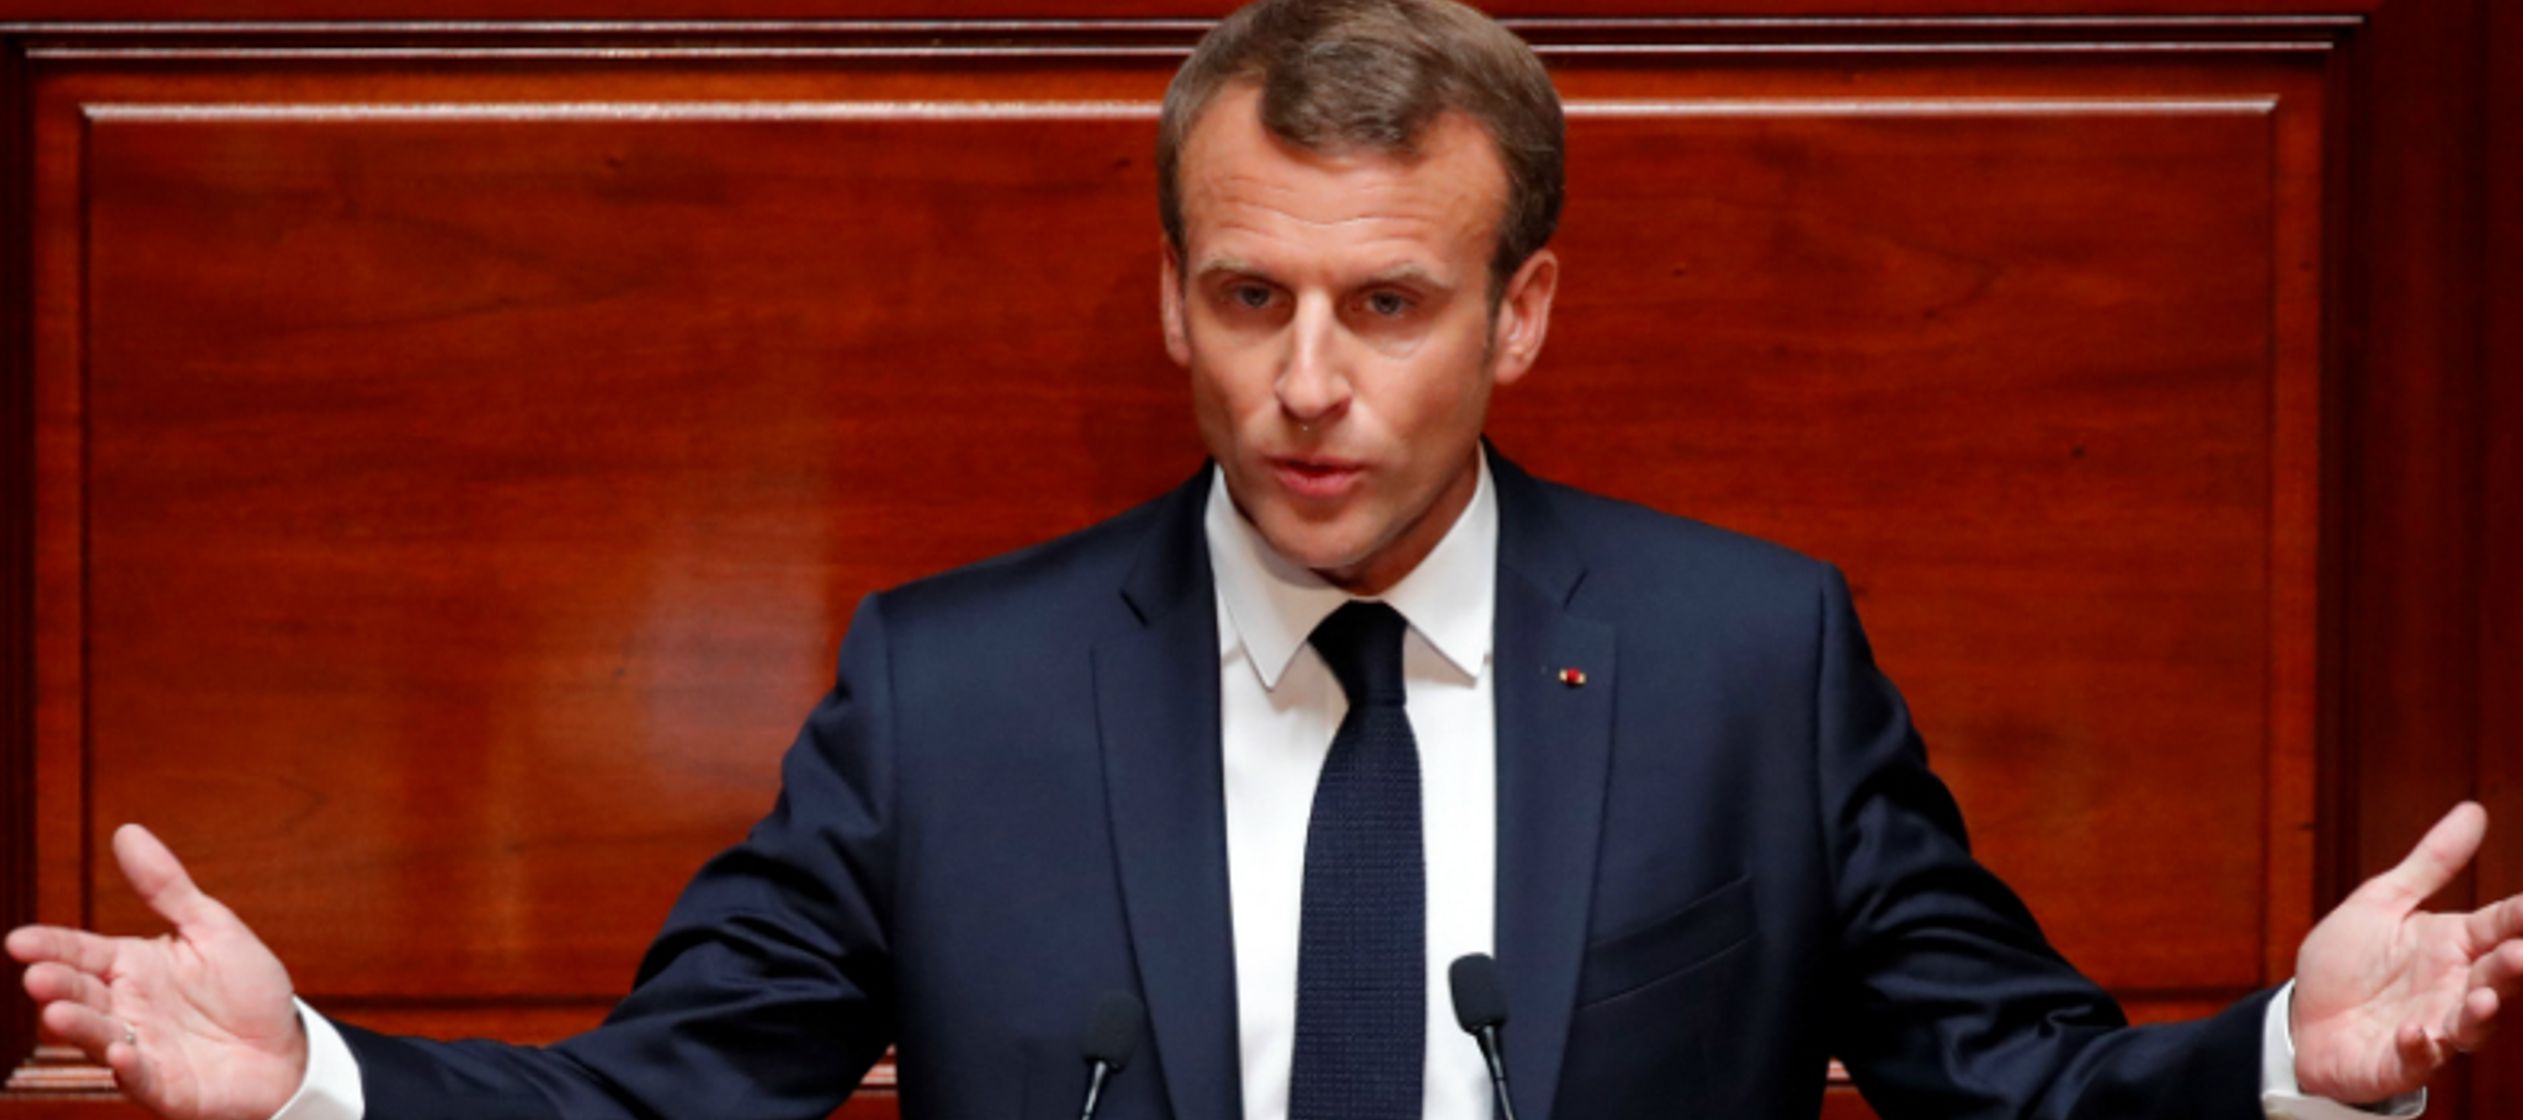 Convencido de "las soluciones están en la cooperación europea", Macron...